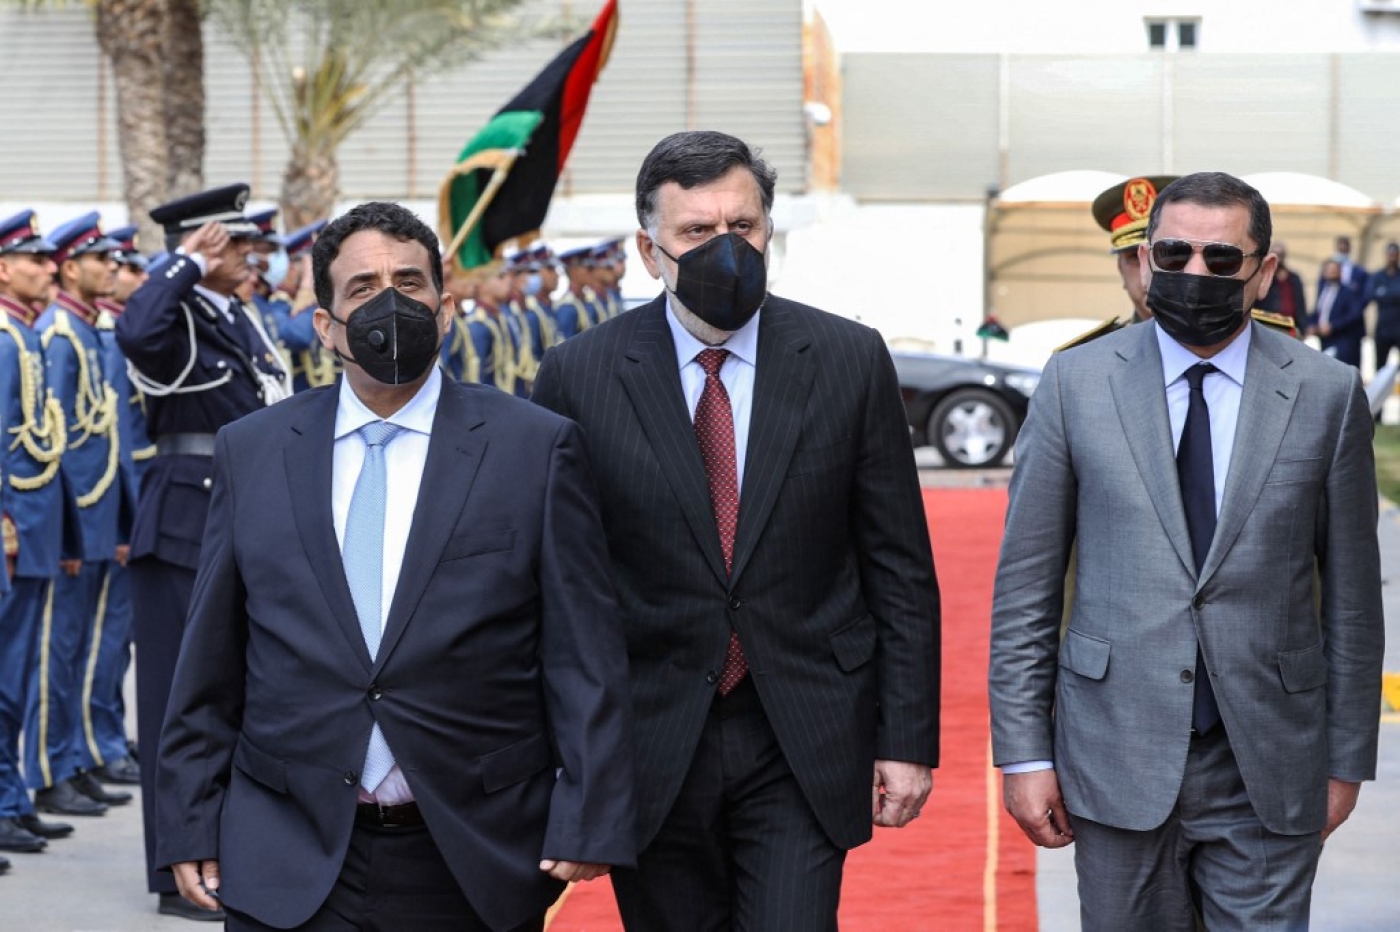 Le chef du conseil présidentiel libyen Mohamed al-Manfi (à gauche) et le Premier ministre Abdel Hamid Dbeibah (à droite) arrive avec le dirigeant du GNA Fayez al-Sarraj pour le transfert de pouvoir à Tripoli, le 16 mars (AFP)